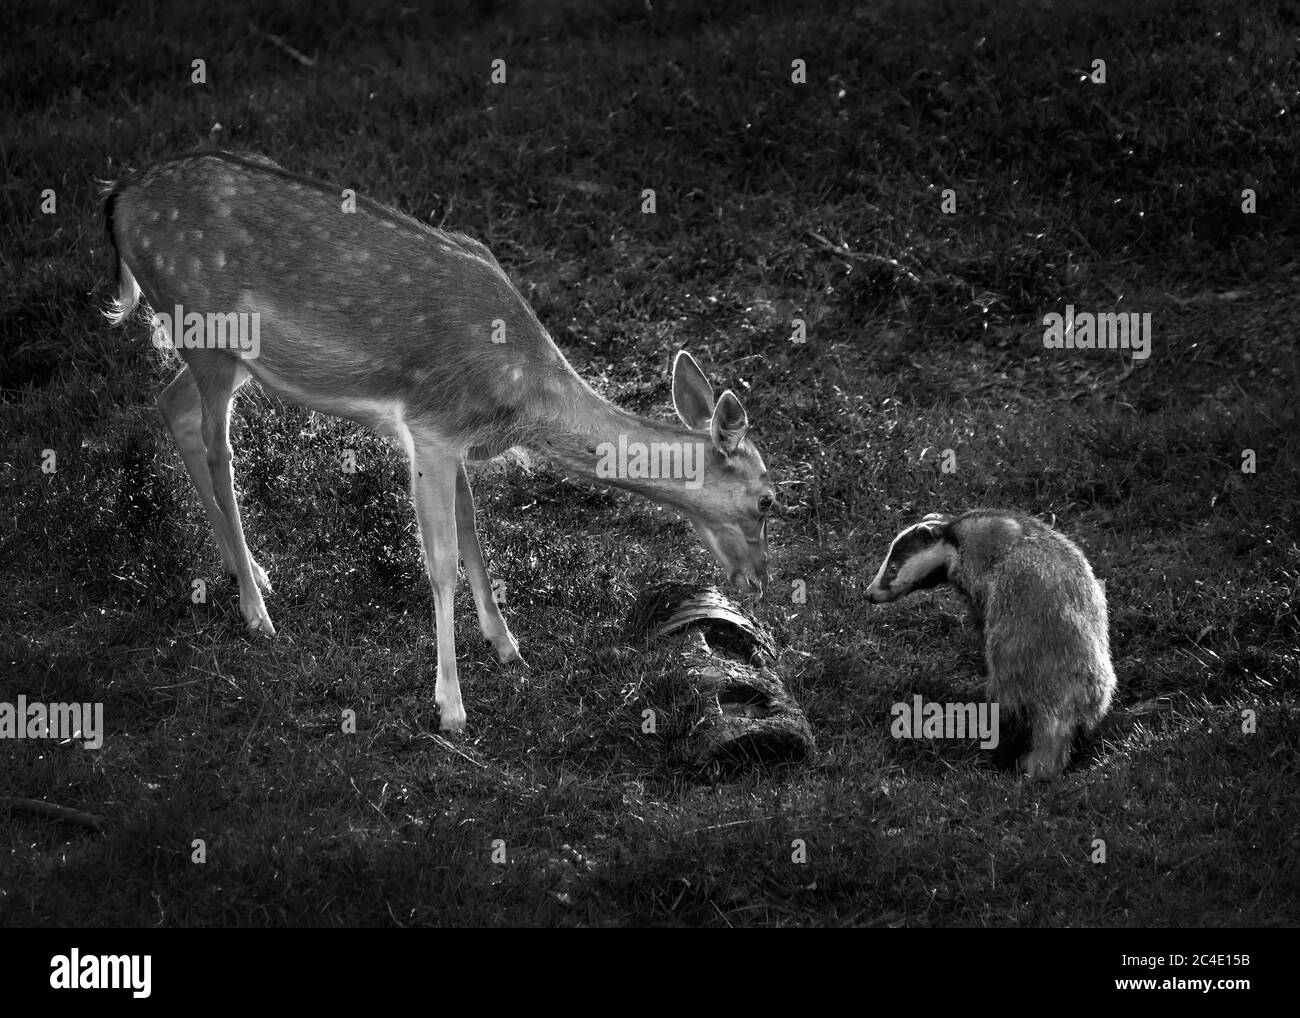 Dachs und Hirsche wilde Tiere Gesicht zu Gesicht, während Fütterung in einem Wald Wald schwarz-weiß monochromes Bild Stockfoto